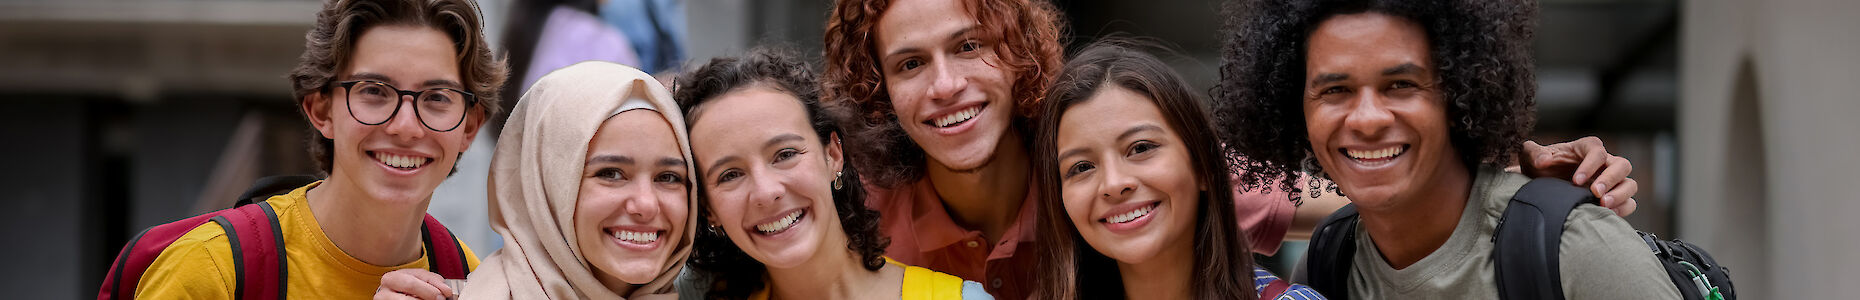 Eine multikulturelle Gruppe von Jugendlichen, die lächelnd in die Kamera schauen.